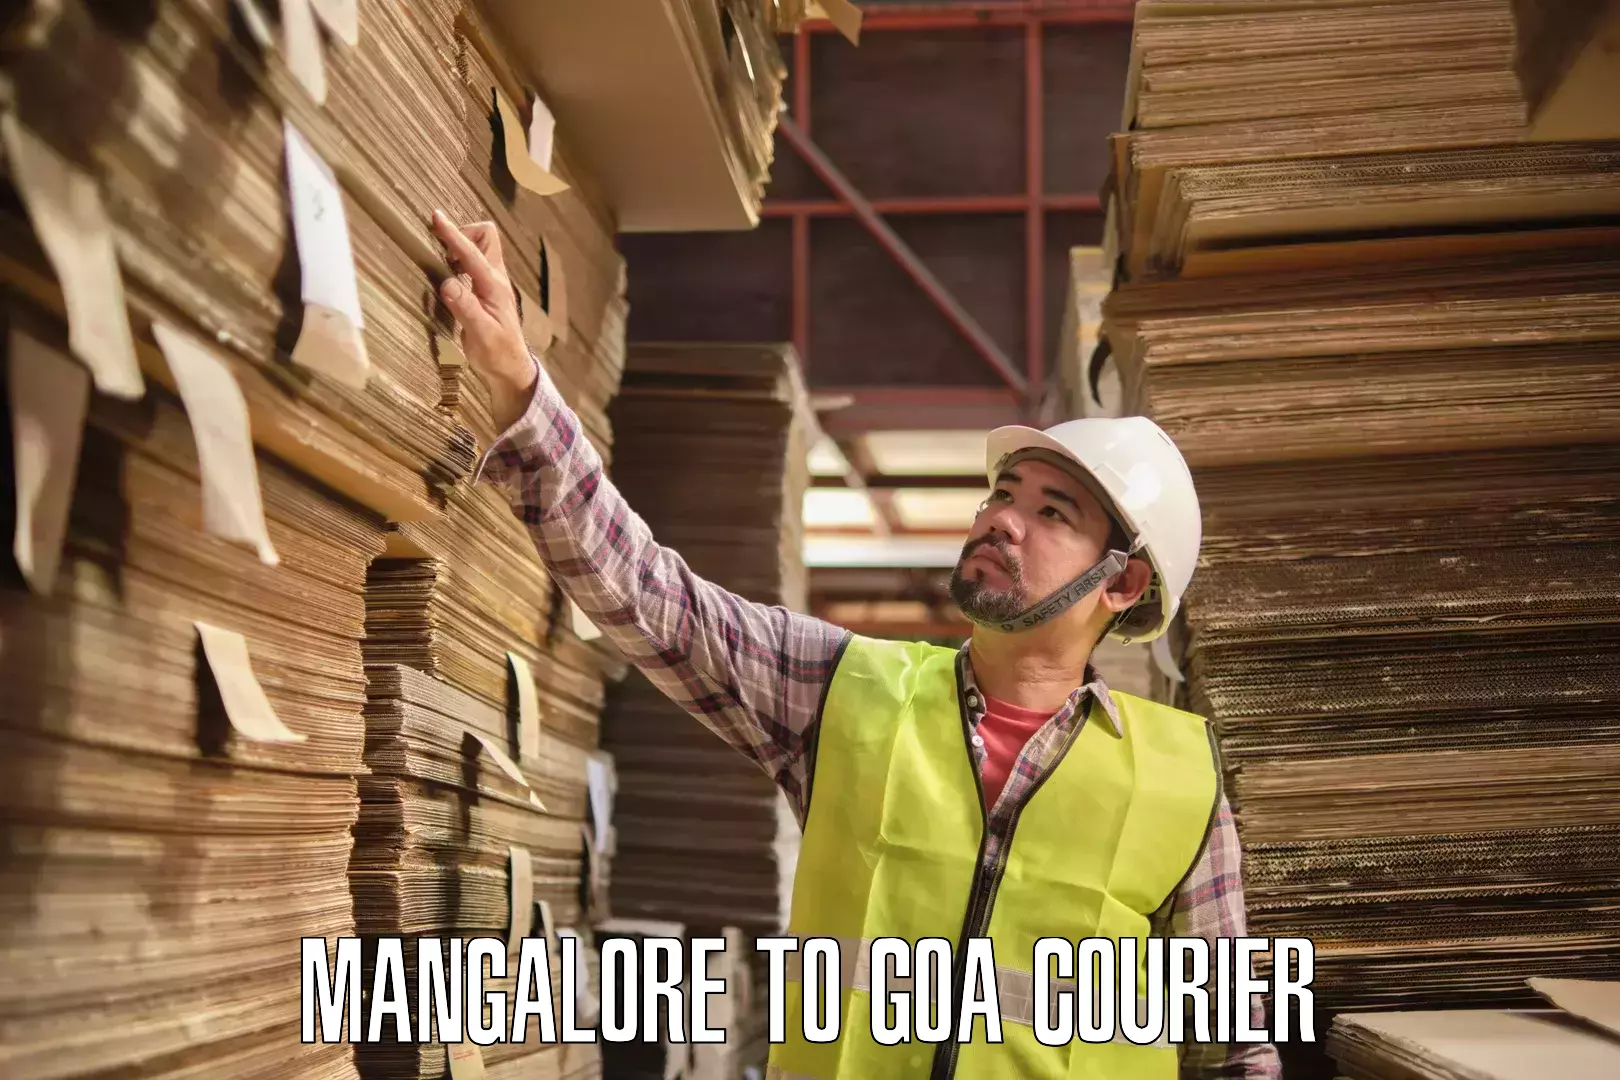 Next-day freight services Mangalore to Goa